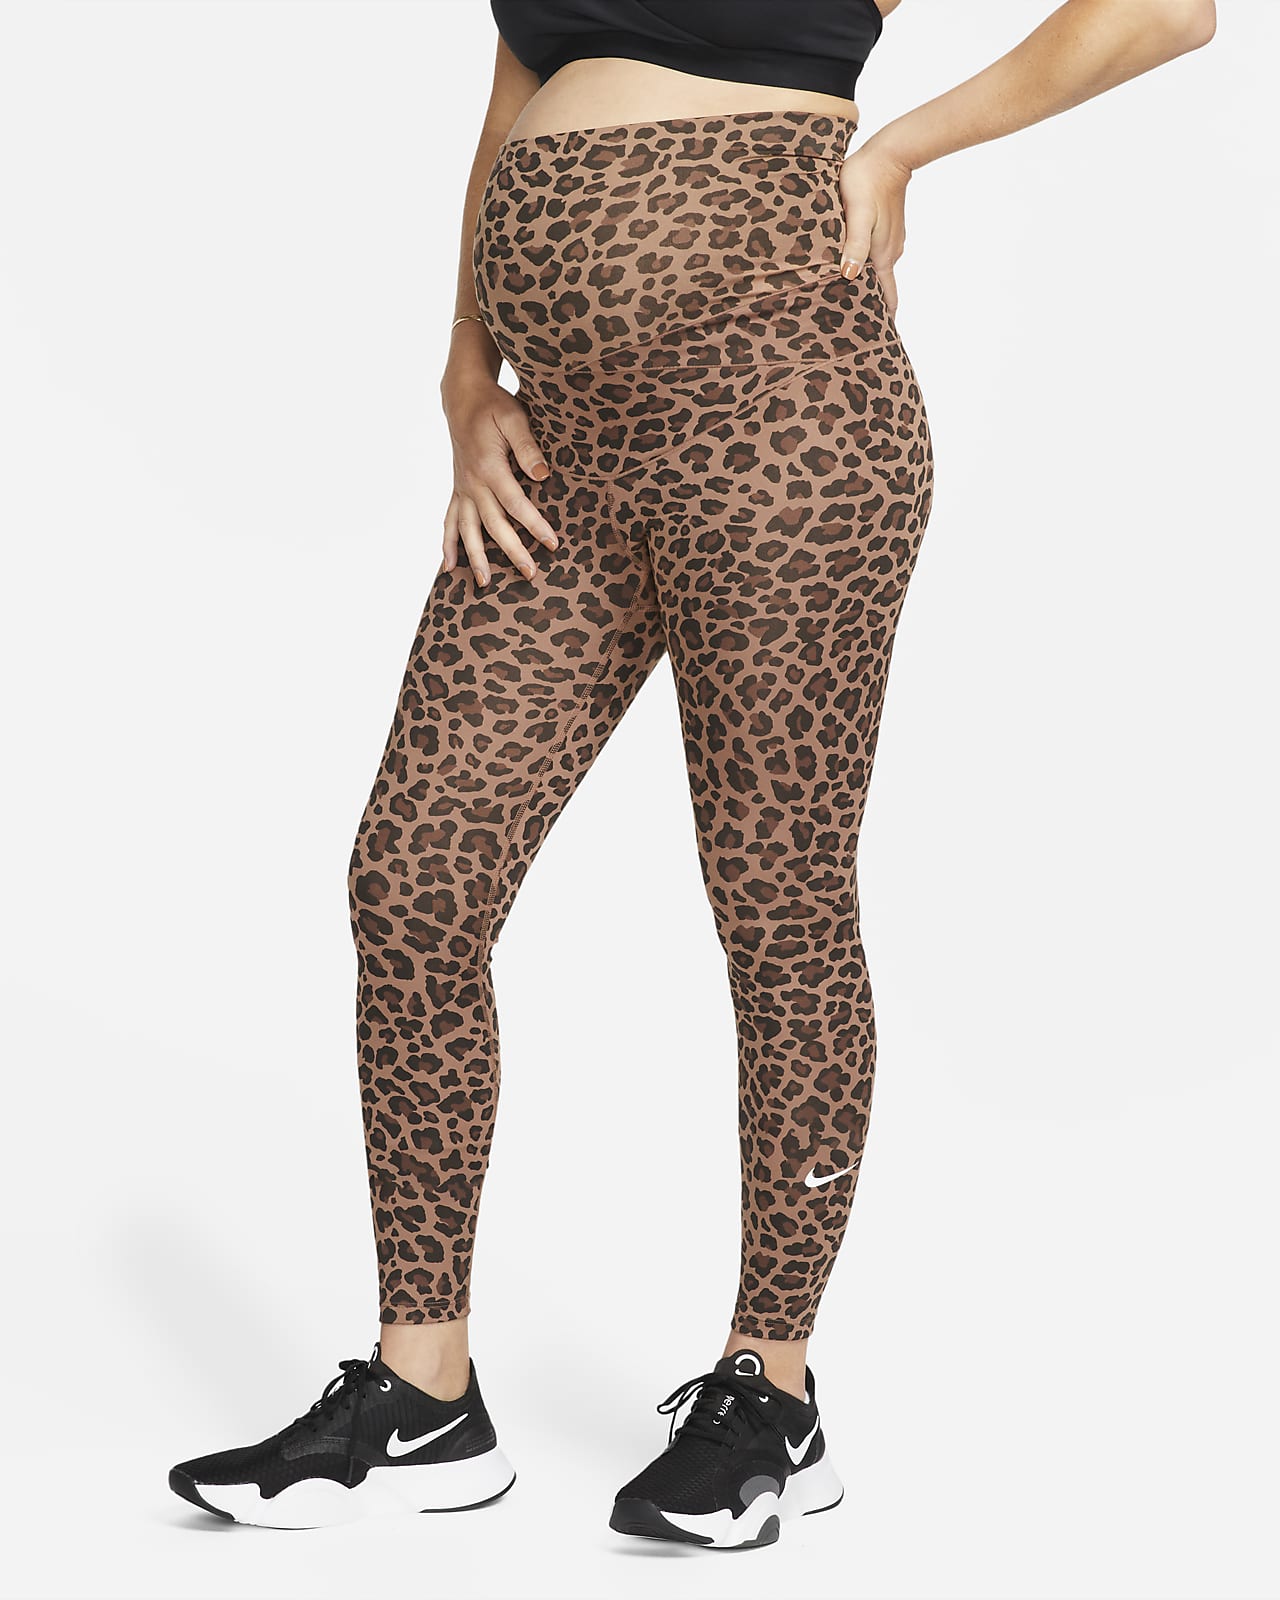 Nike One (M) Damen-Leggings mit hohem Taillenbund und Leoparden-Print (Umstandsbekleidung)